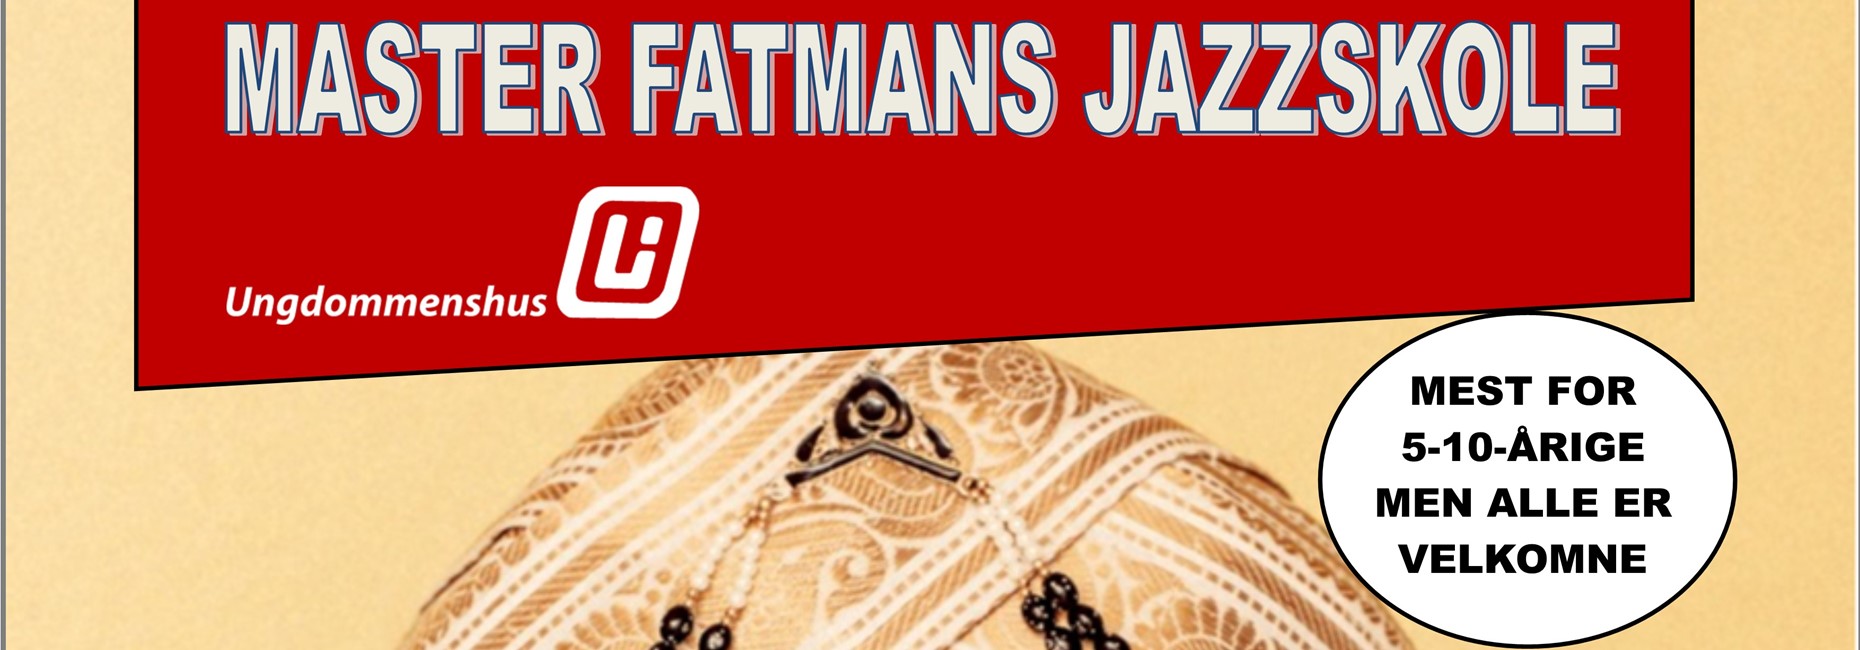 Master Fatmans Jazzskole - børne- og familievenlig